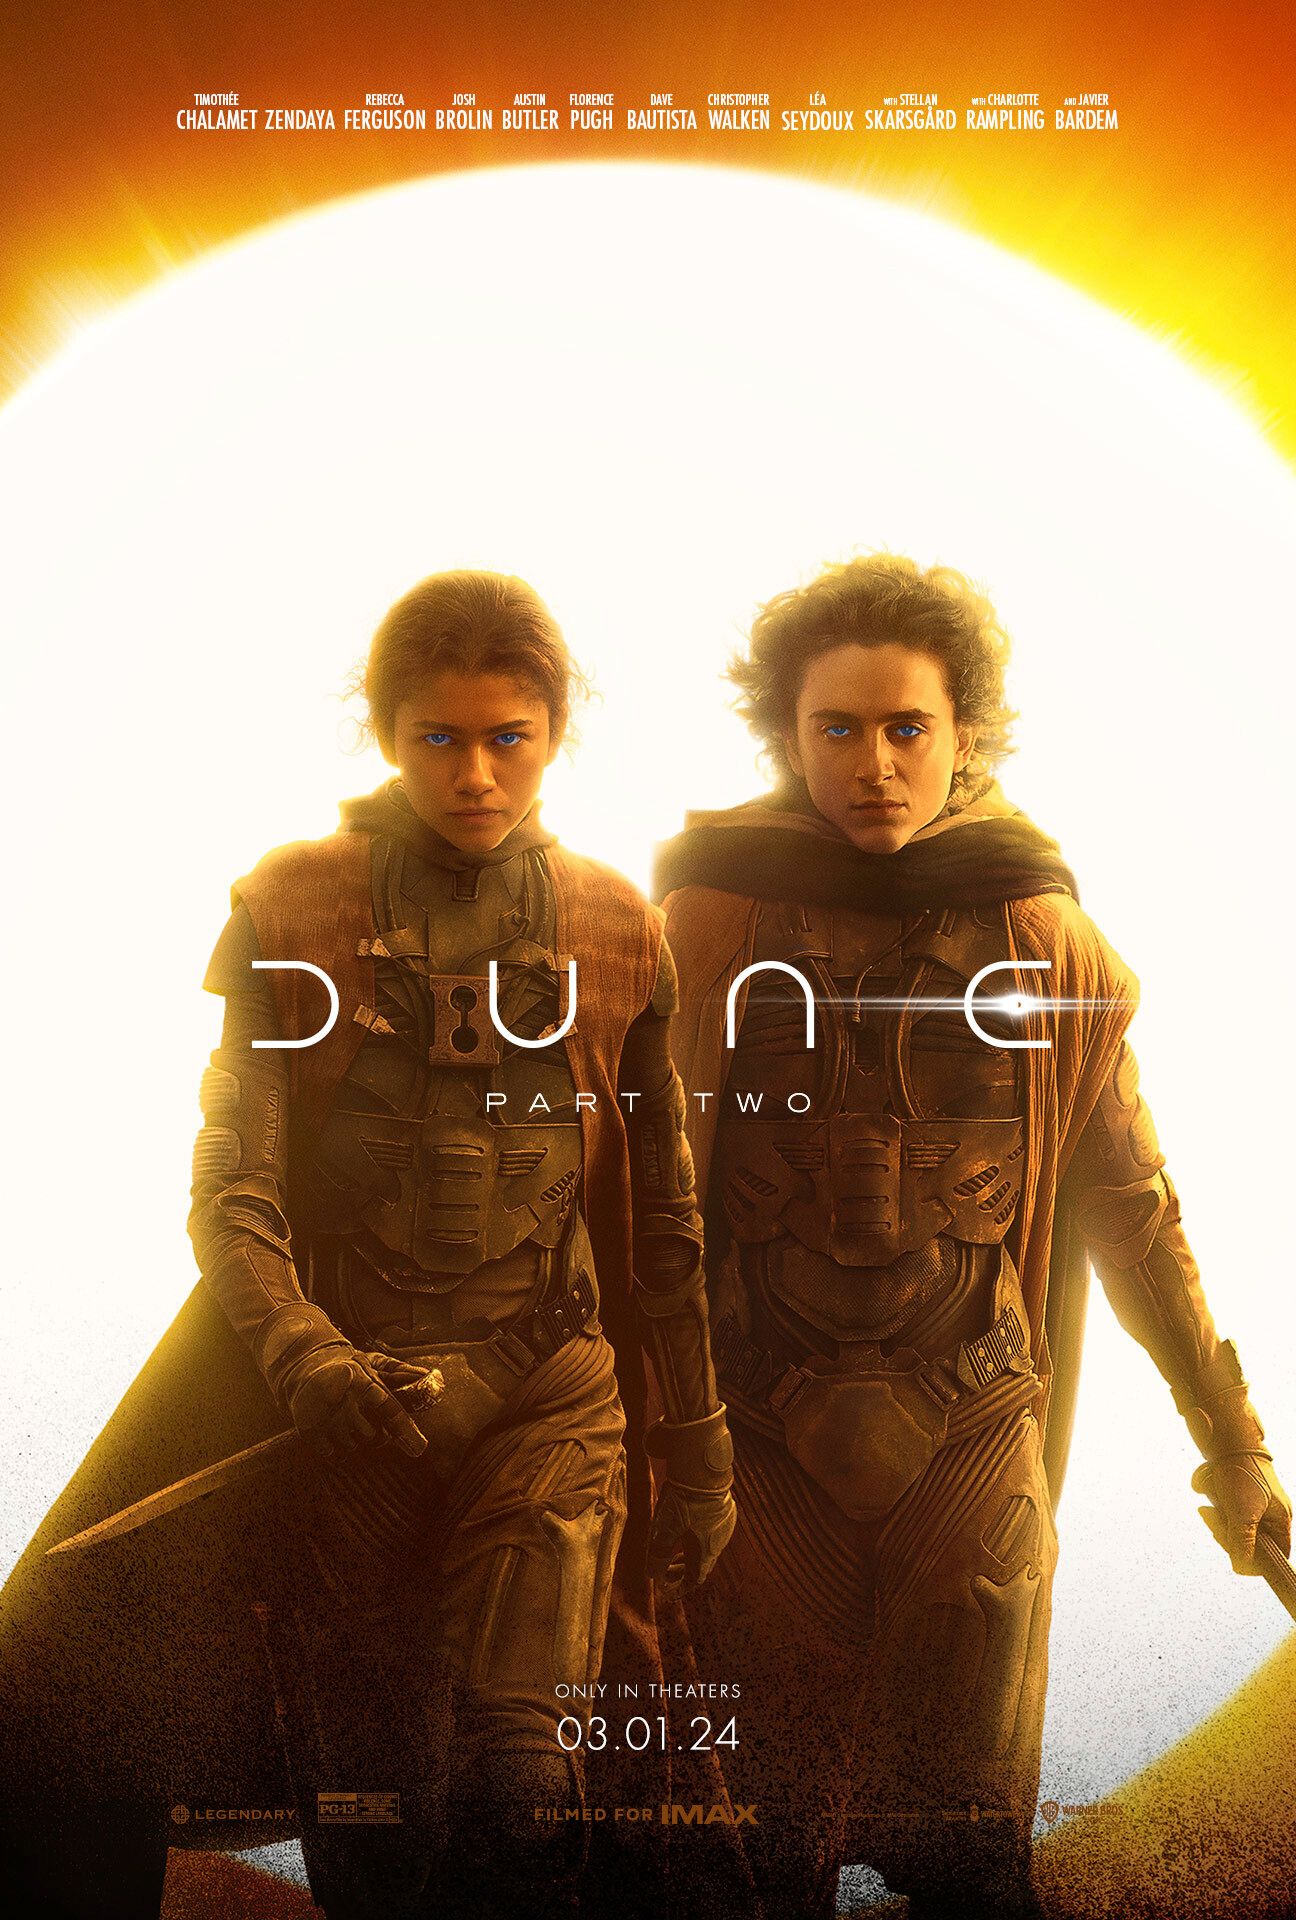 Plakat z części 2 Dune przedstawiający Timothee Chalameta w roli Paula Atrydy i Zendayę w roli Chani trzymającej sztylety